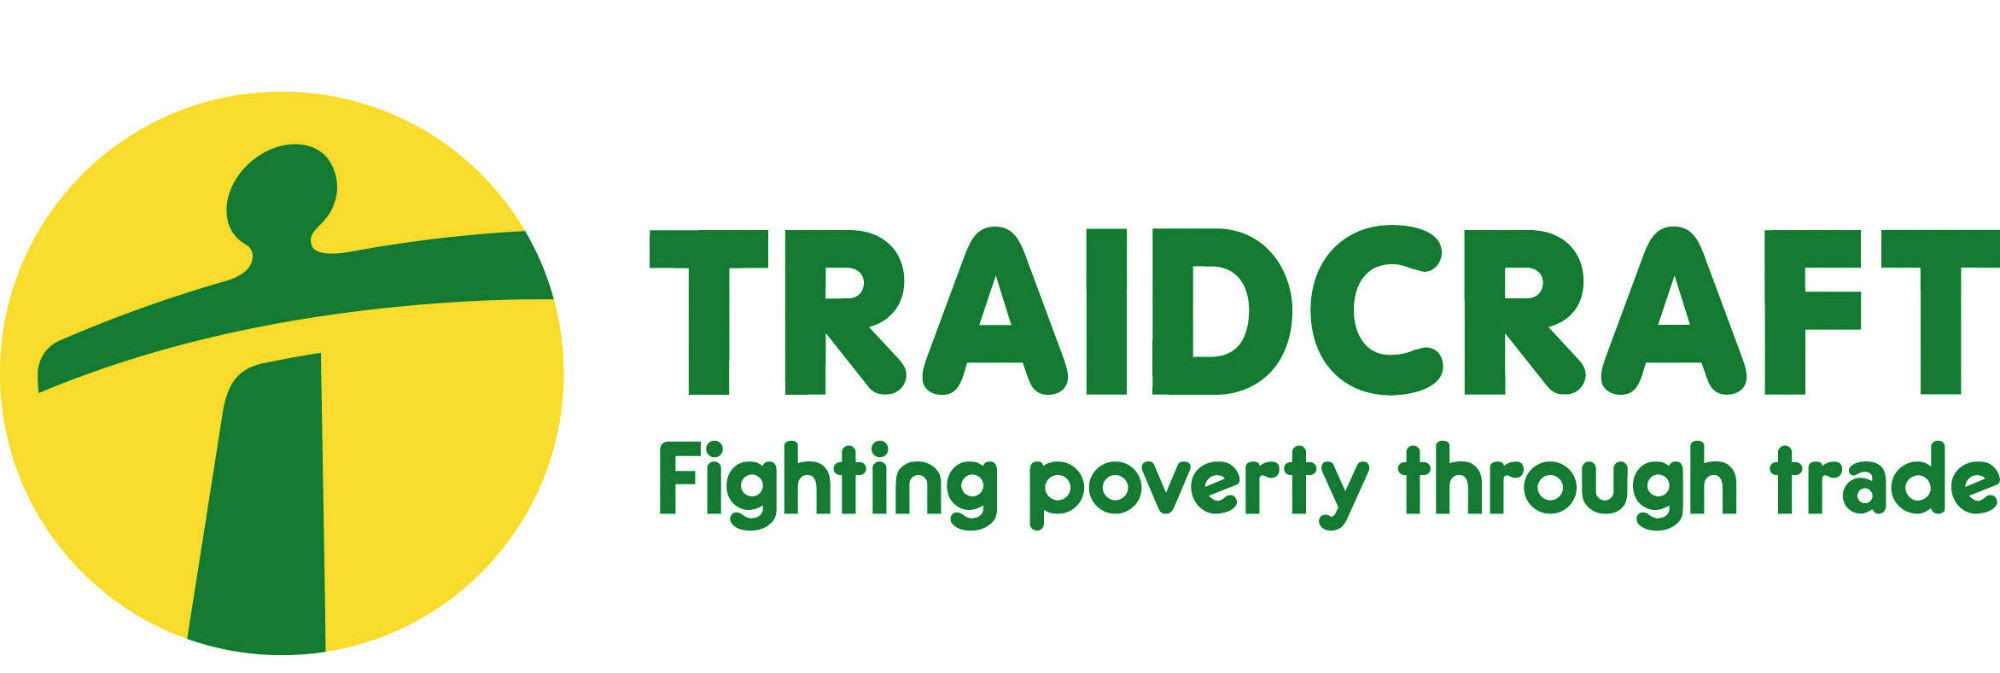 2017 Traidcraft logo